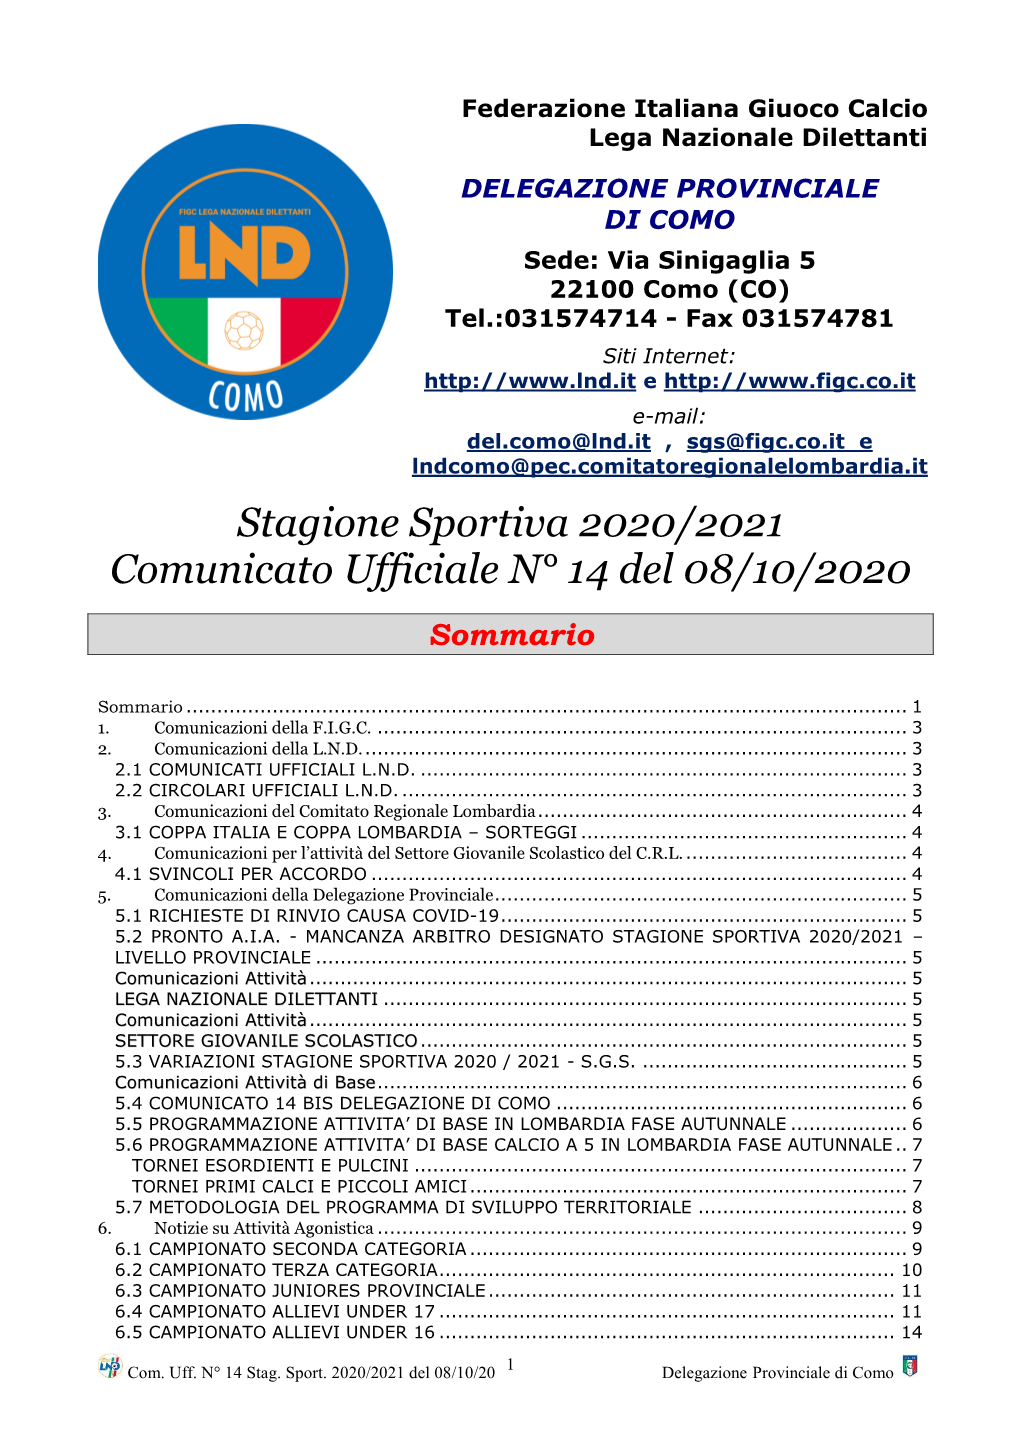 Stagione Sportiva 2020/2021 Comunicato Ufficiale N° 14 Del 08/10/2020